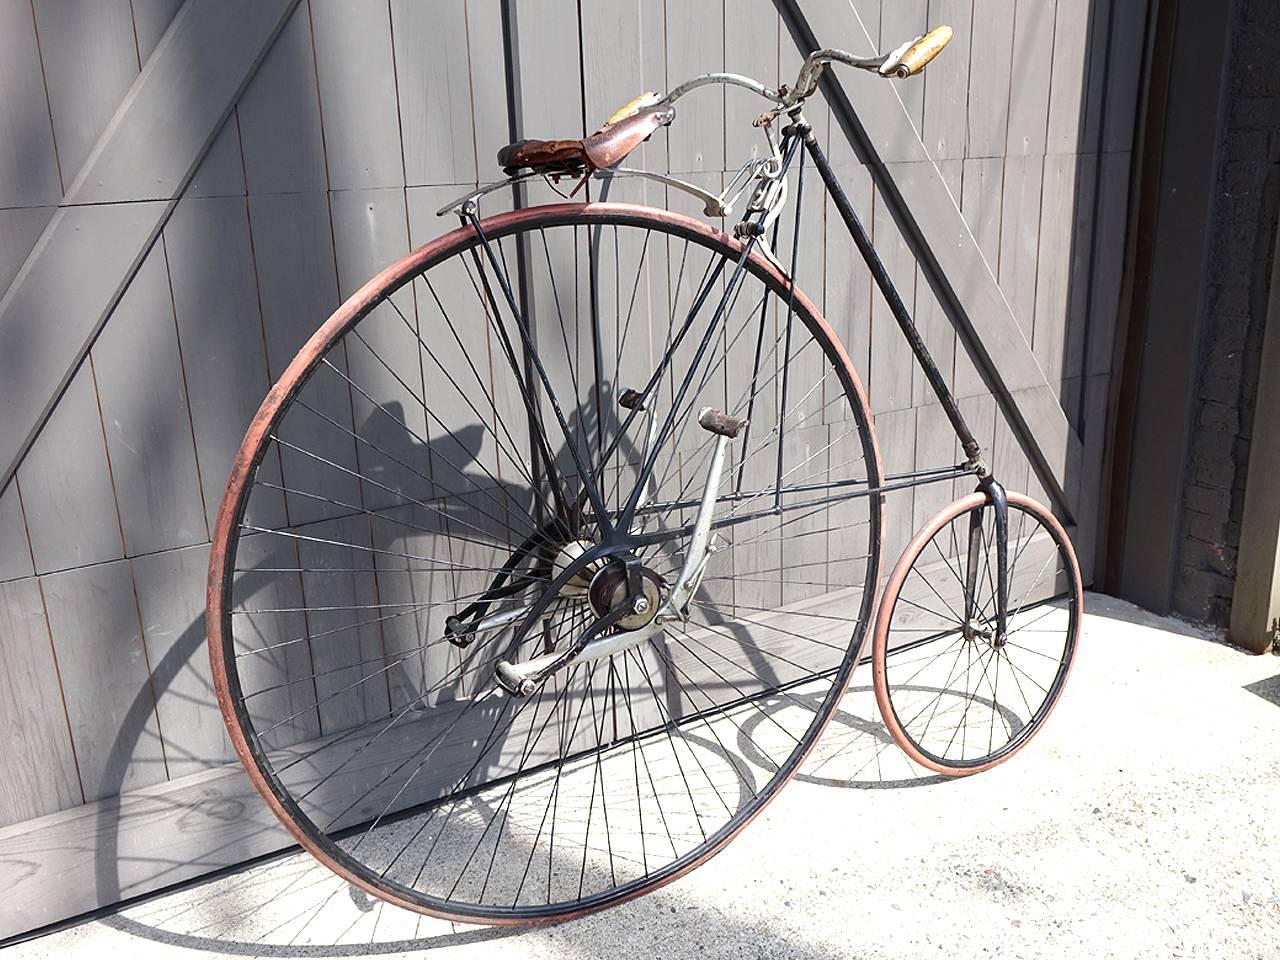 1880s bike